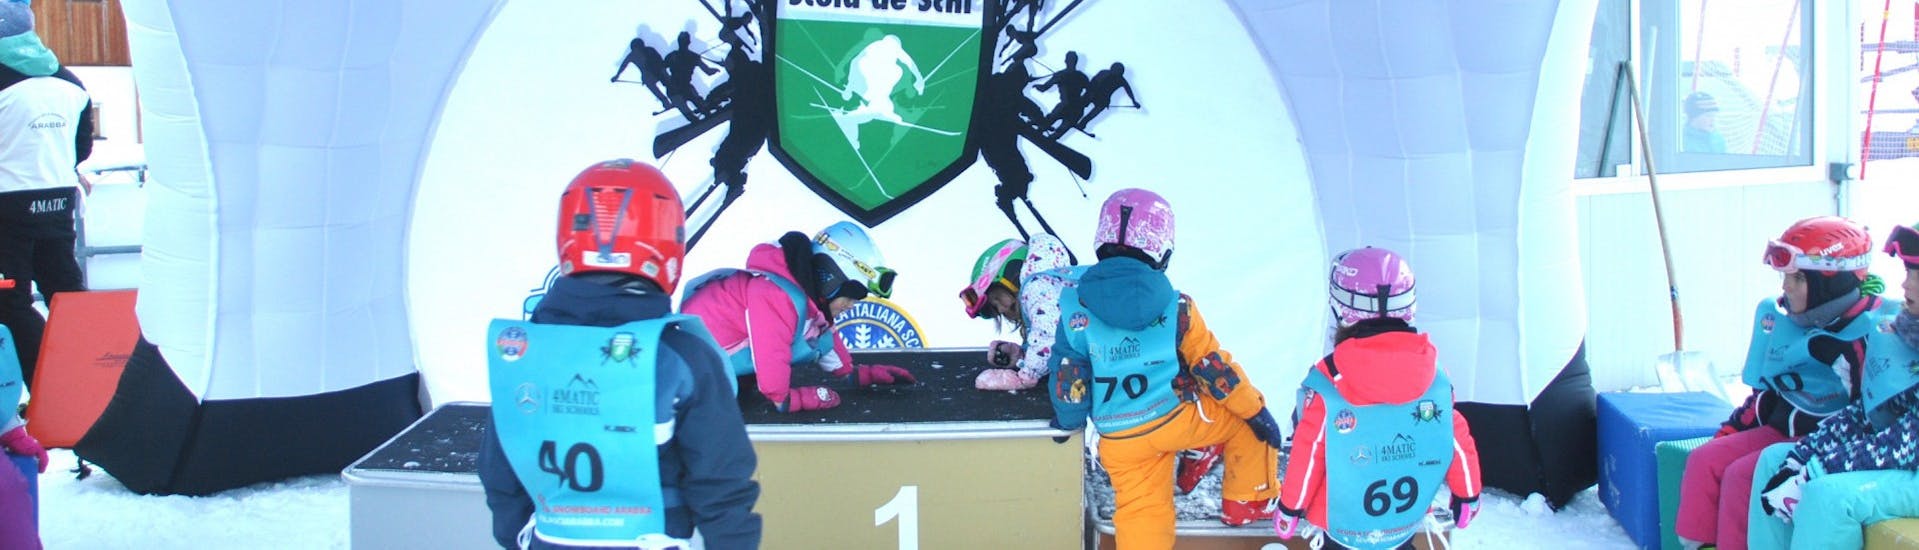 Kleine Skifahrer im Kinderbereich während des Kinderskikurses (ab 4 Jahren) für fortgeschrittene Skifahrer - Ganztags mit der Scuola Italiana Sci Arabba.